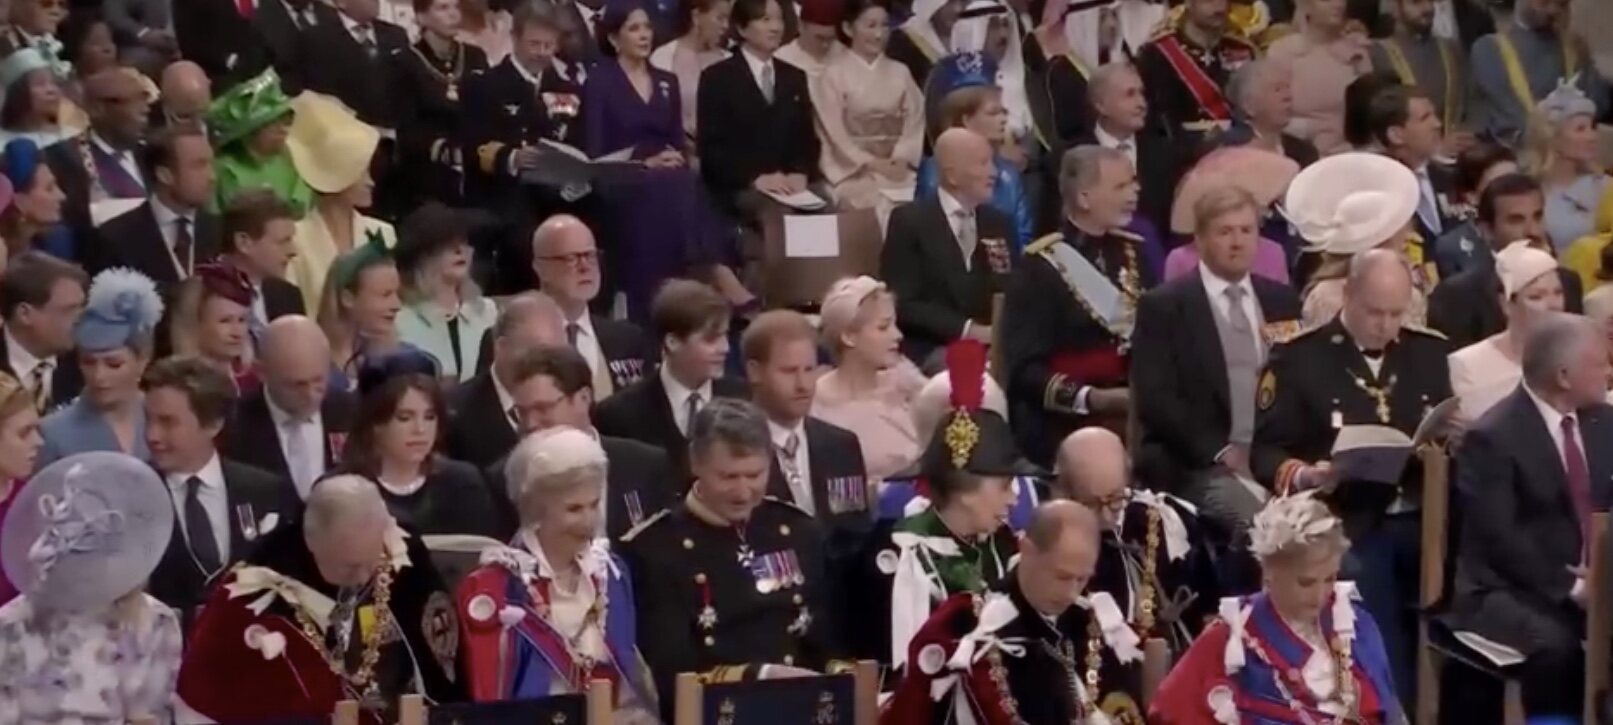 Los Royals invitados a la ceremonia en la Abadía de Westminster